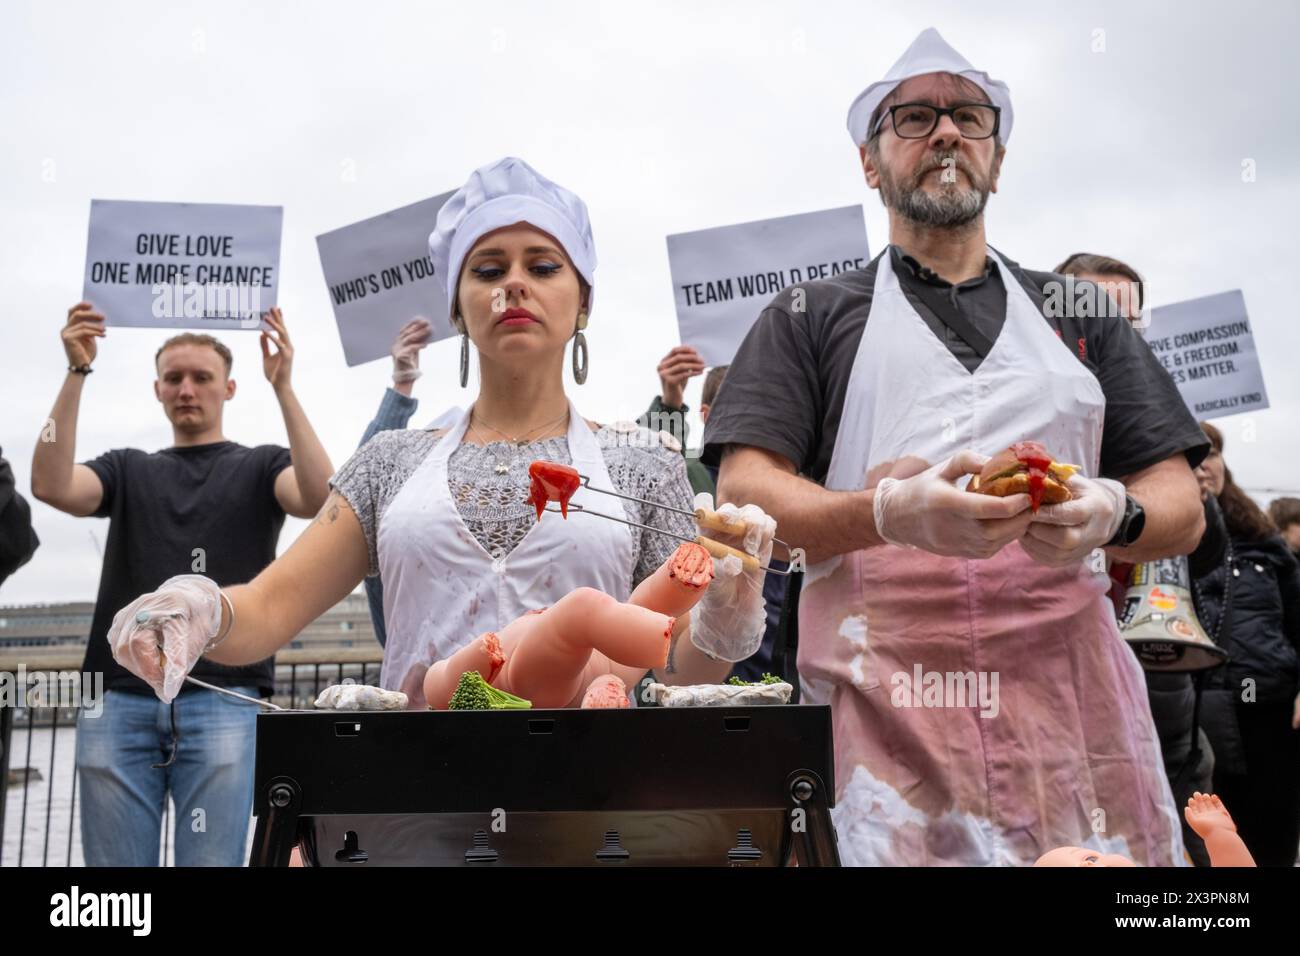 Vegane Demonstranten geben vor, menschliche Babys während der Kundgebung zu kochen. Die vegane Gruppe Radically Kind hielt eine Demonstration im Tate Modern am Südufer der Themse ab. Mit grafischen Bildern hoffen sie, Fleischesser in Veganismus zu verwandeln. Stockfoto